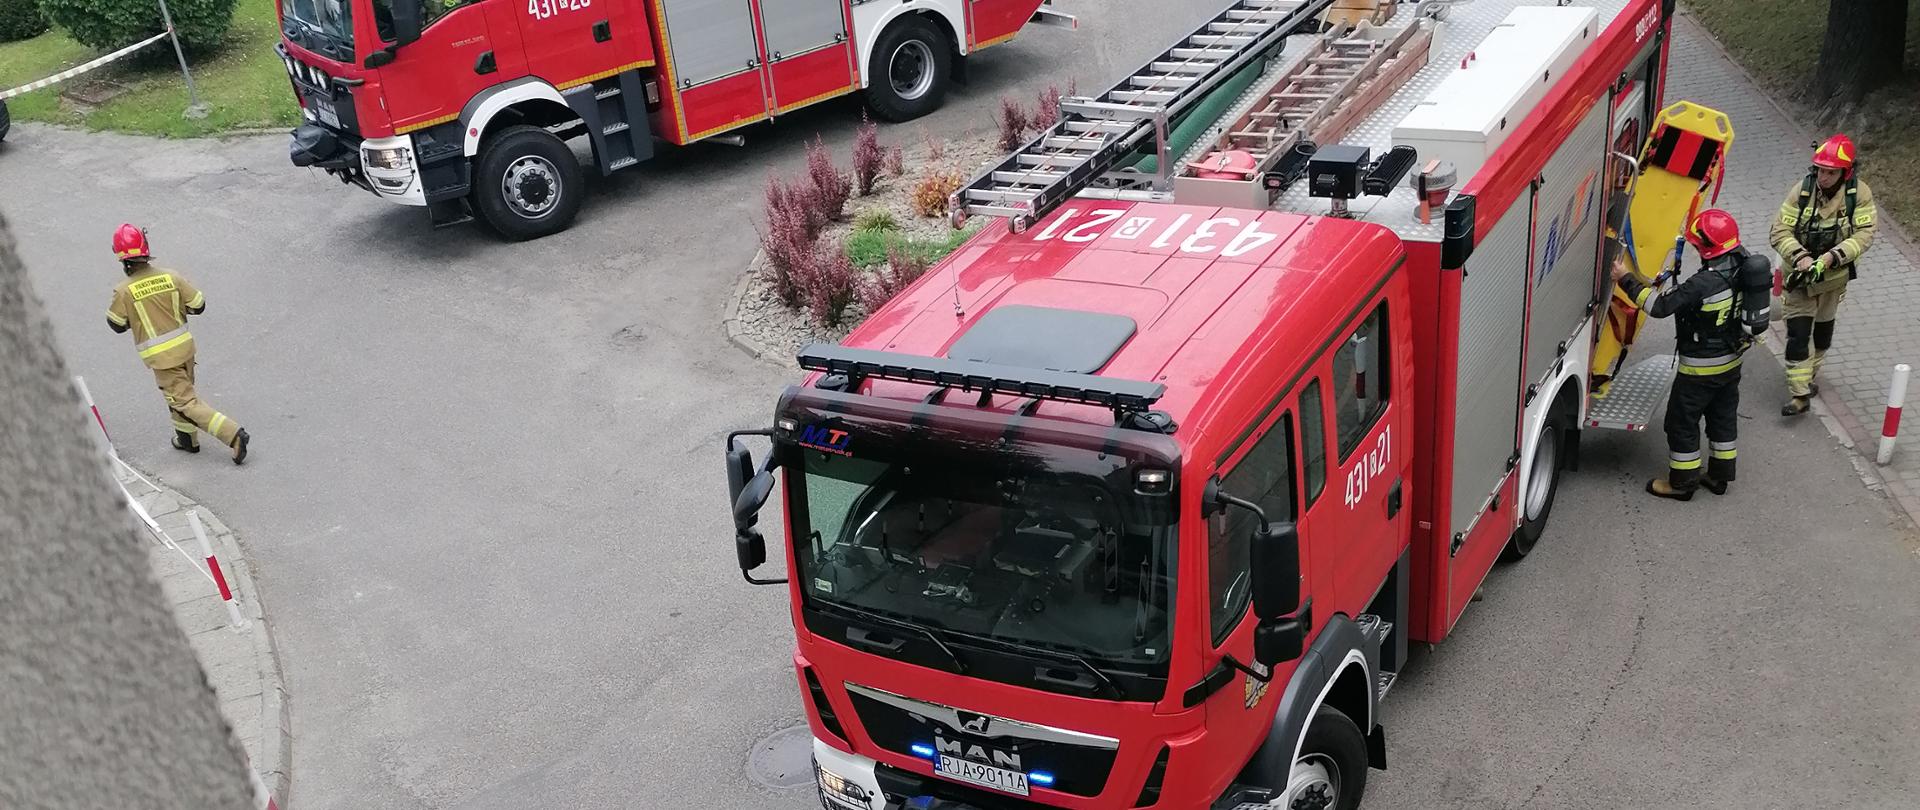 Na zdjęciu widzimy ustawione przed budynkiem szpitala dwa samochody pożarnicze, a także strażaków wyciągających z jednego z nich sprzęt ratowniczy. 